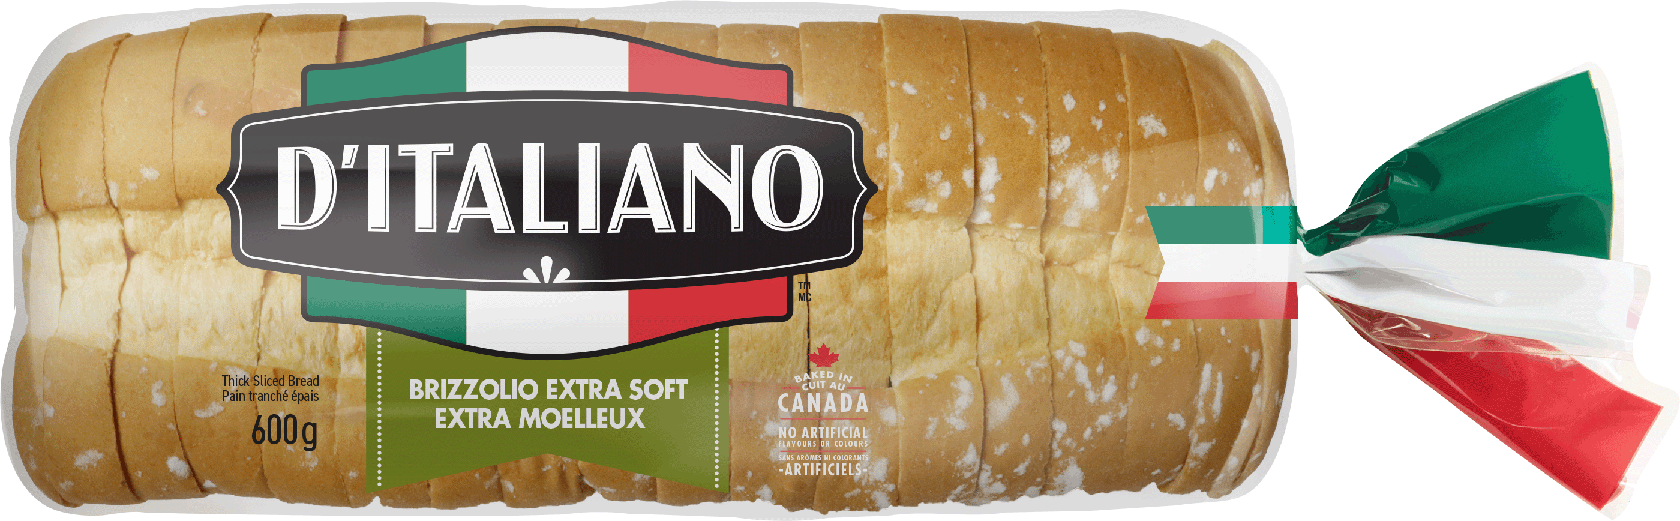 D’Italiano® Brizzolio Bread